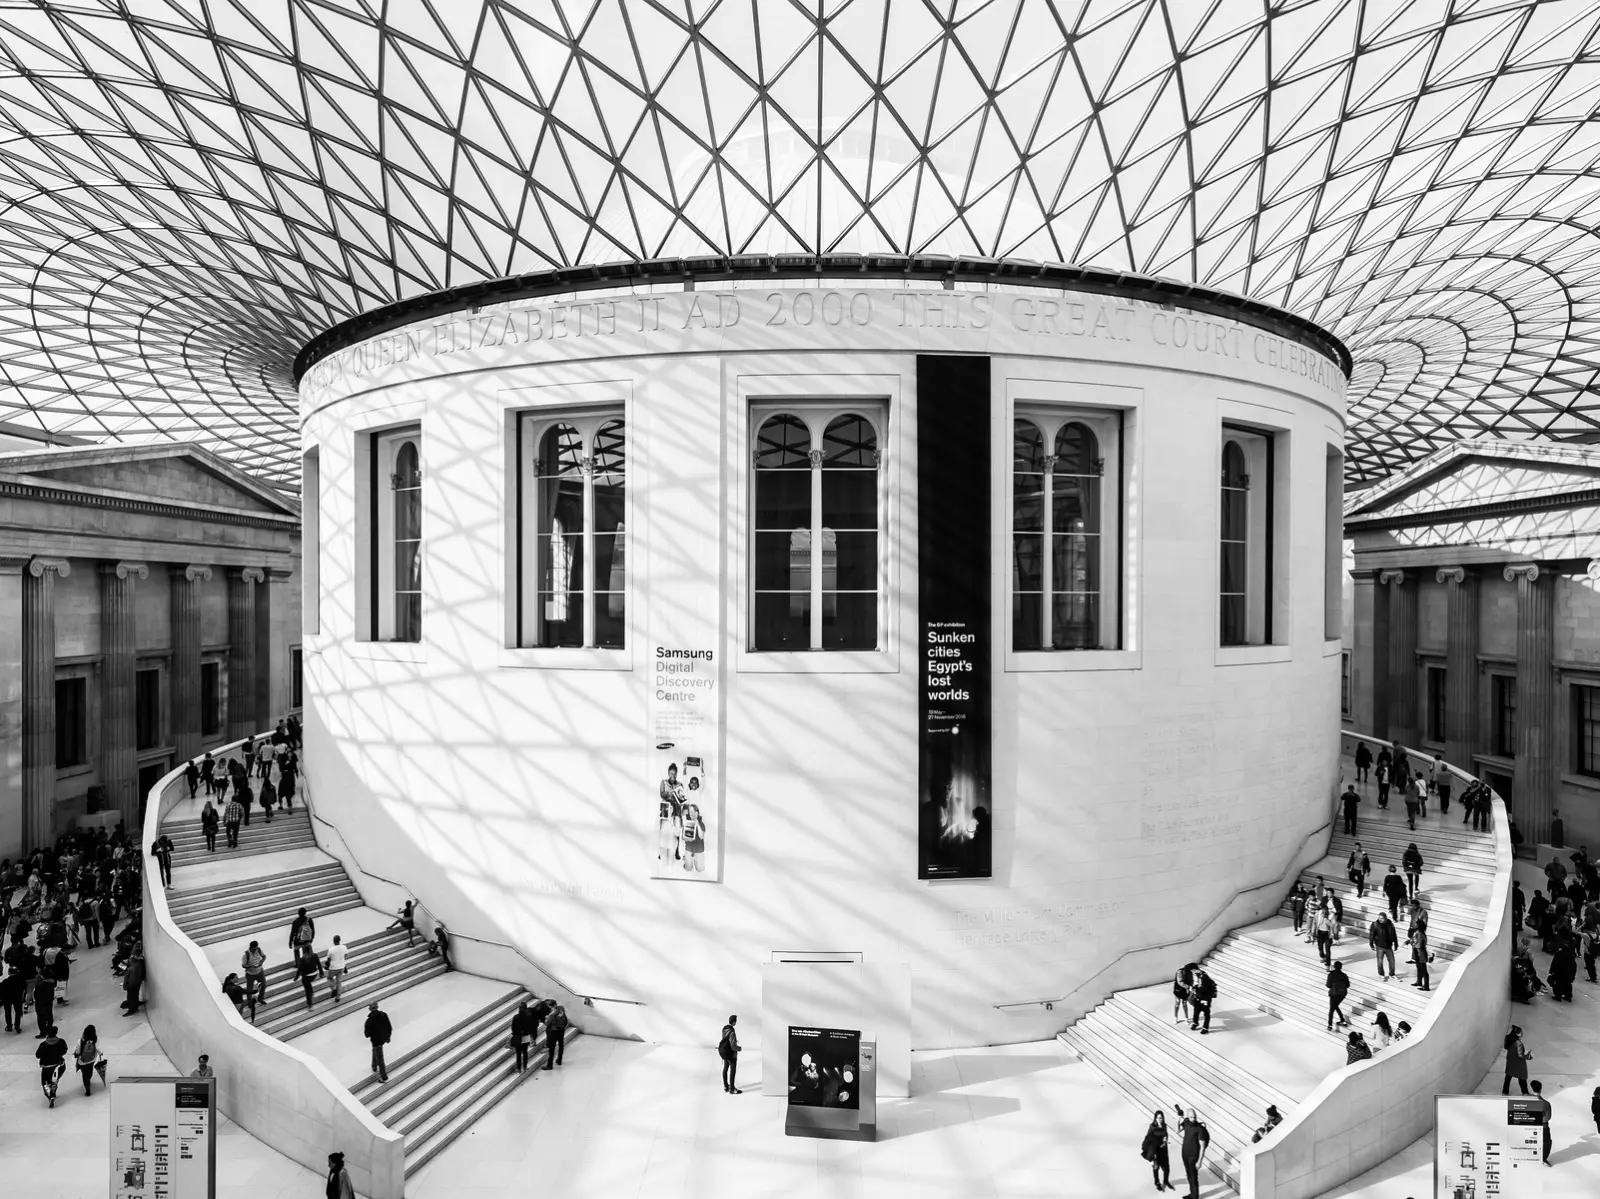 British museum stairs